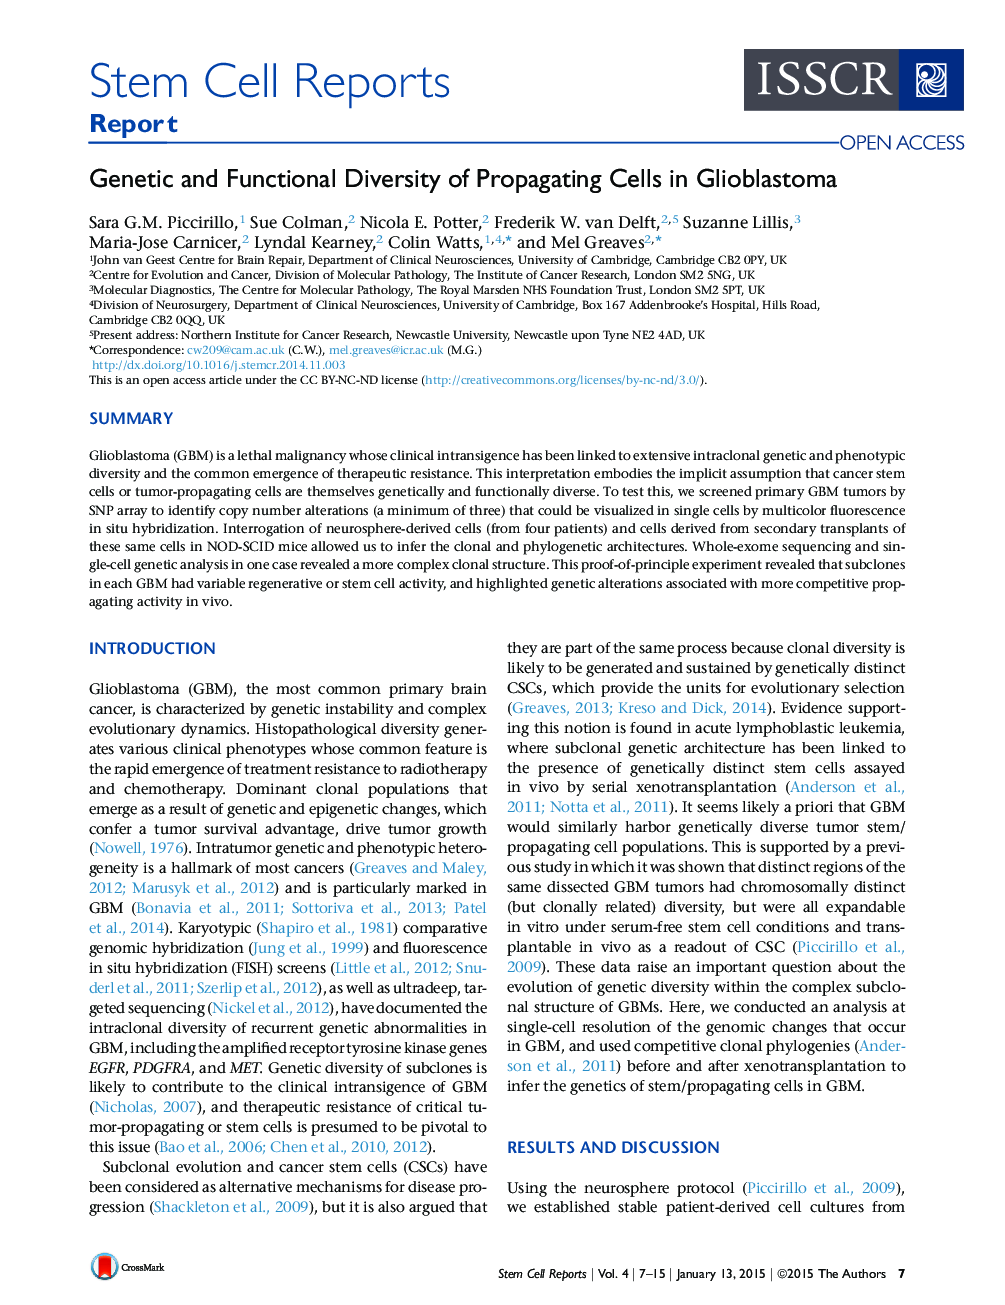 تنوع ژنتیکی و عملکرد سلولهای تکثیر شده در گلیوبلاستوما 